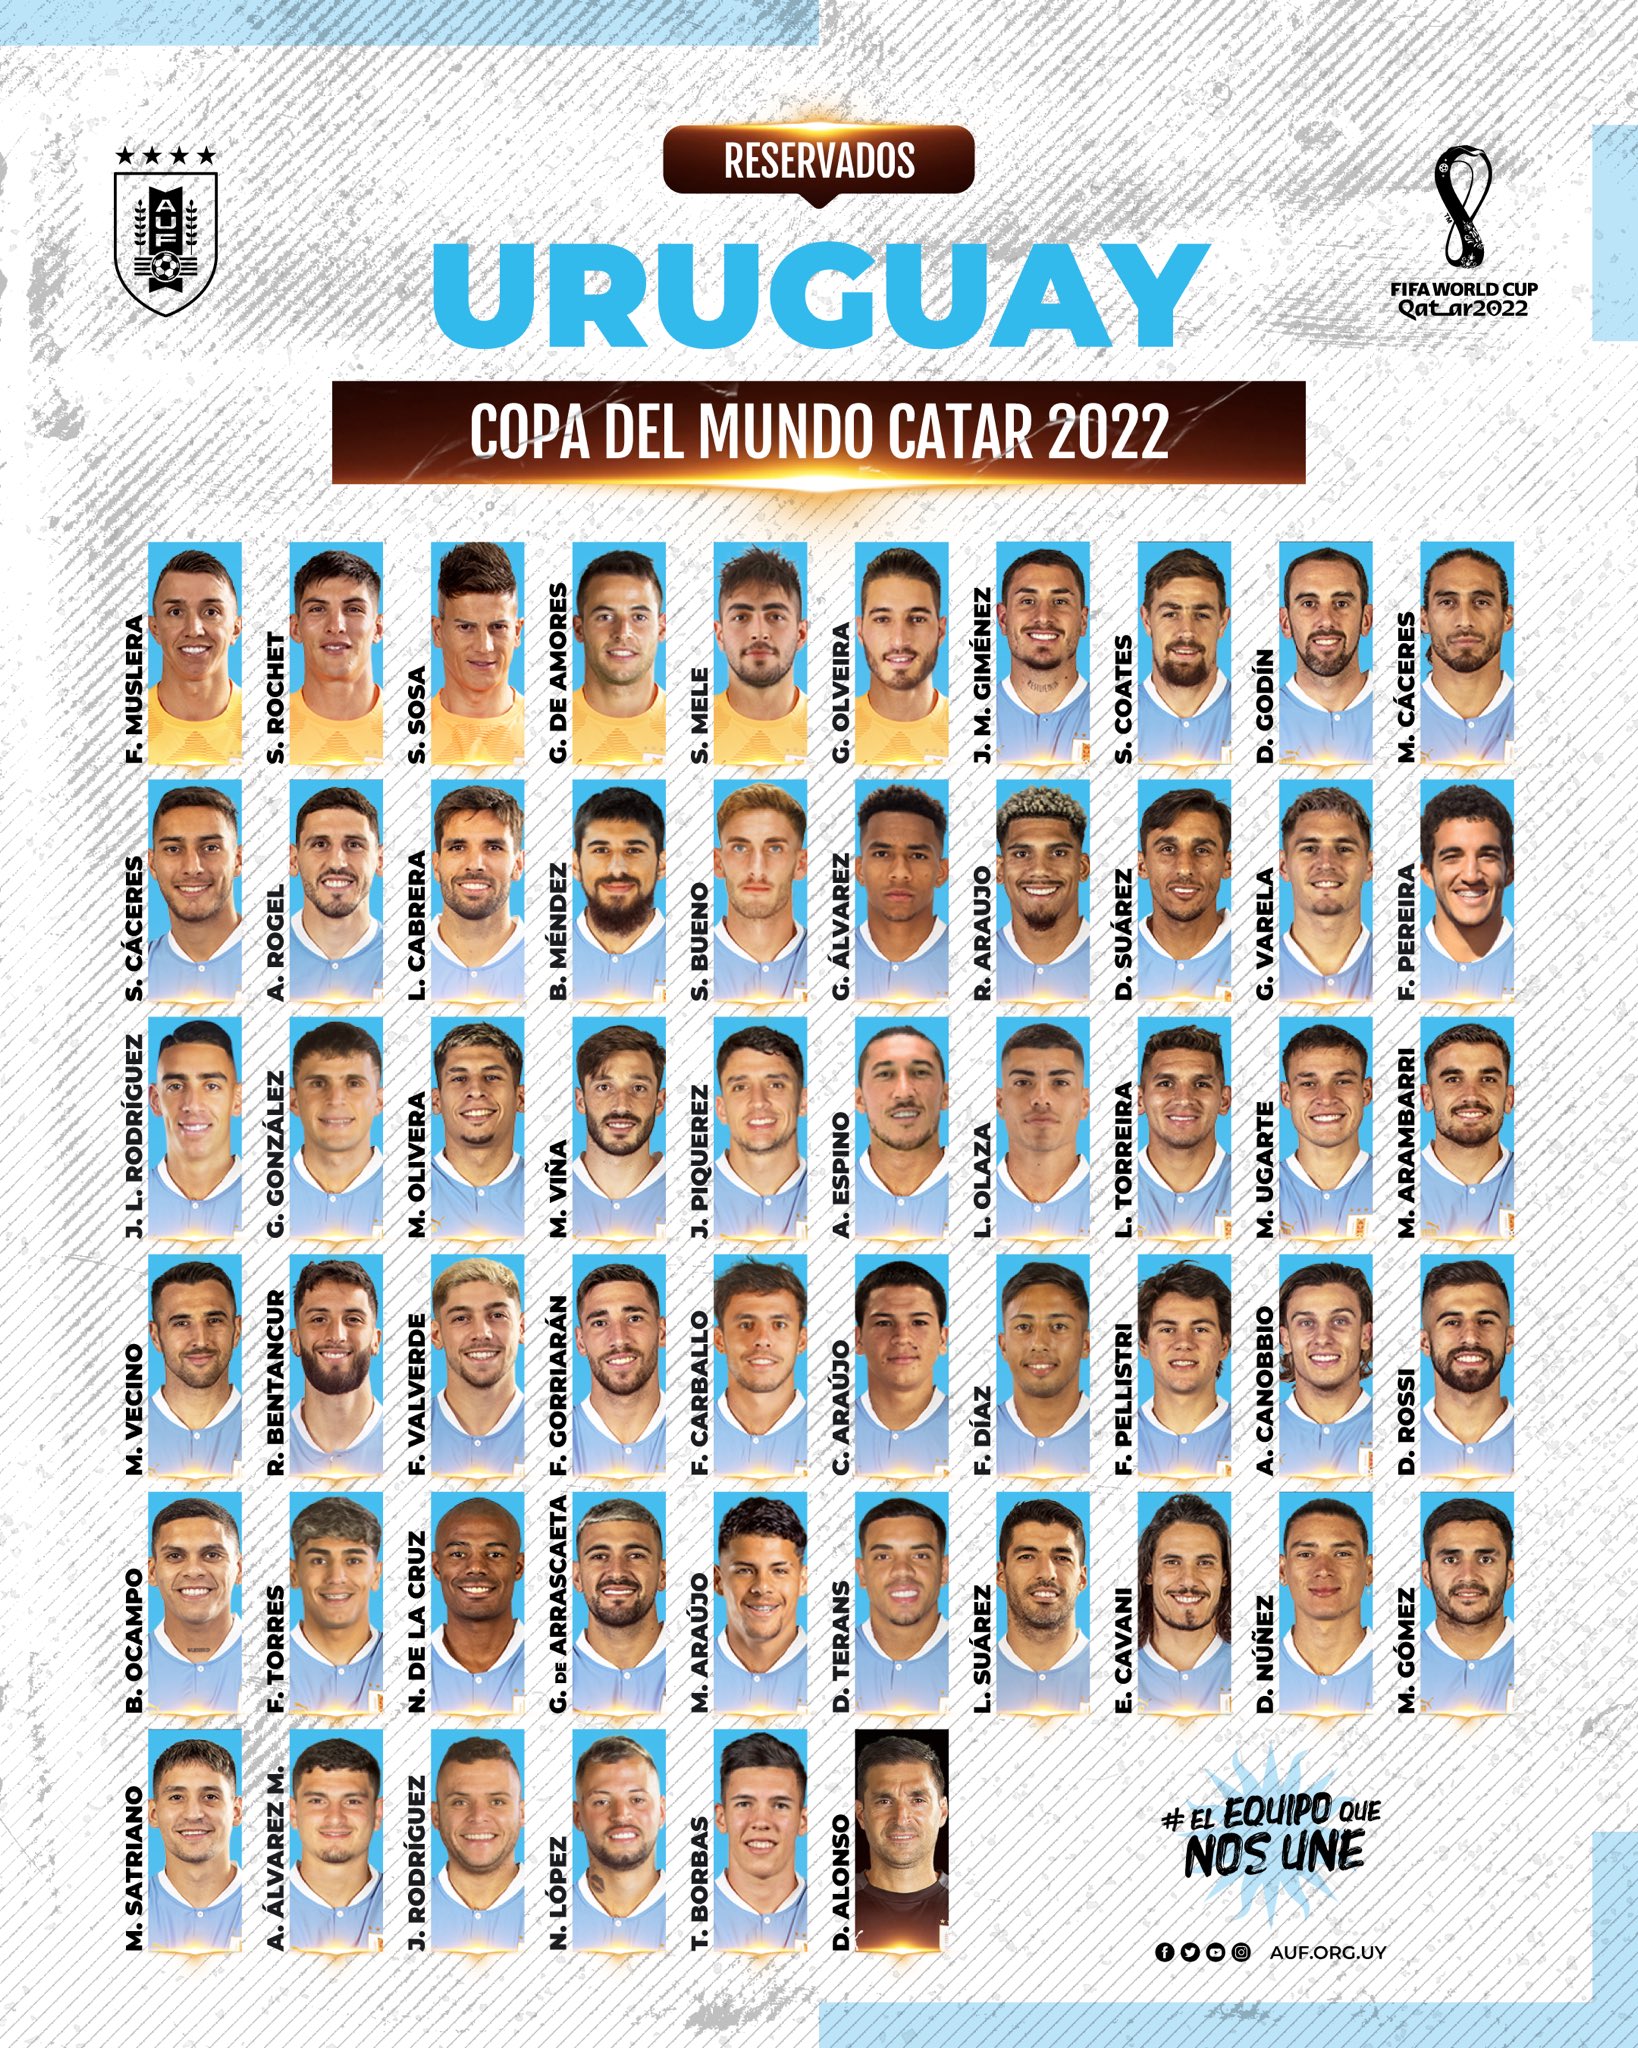 Aquí están los 55 futbolistas de Uruguay presentados para el Mundial de